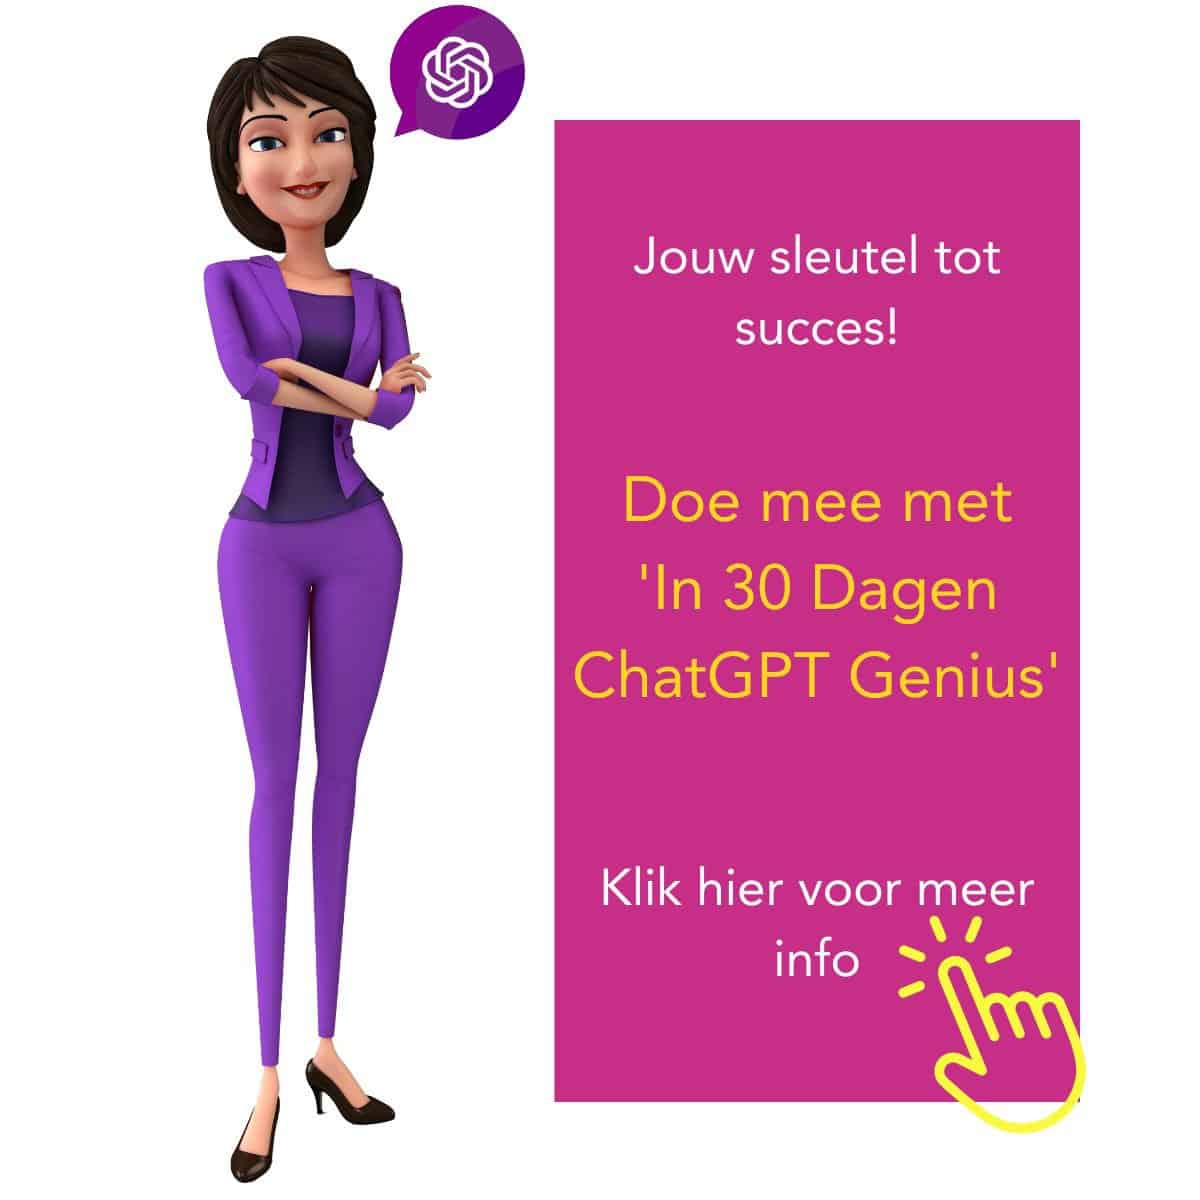 De eerste Nederlandse ChatGPT cursus